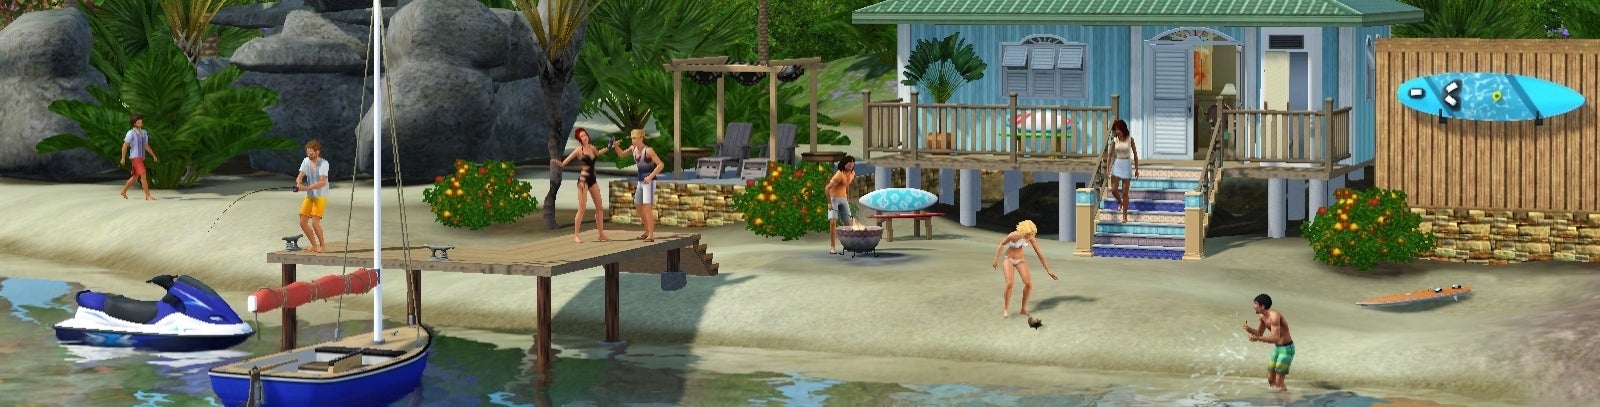 Imagen para Análisis de Los Sims 3: Aventura en la Isla